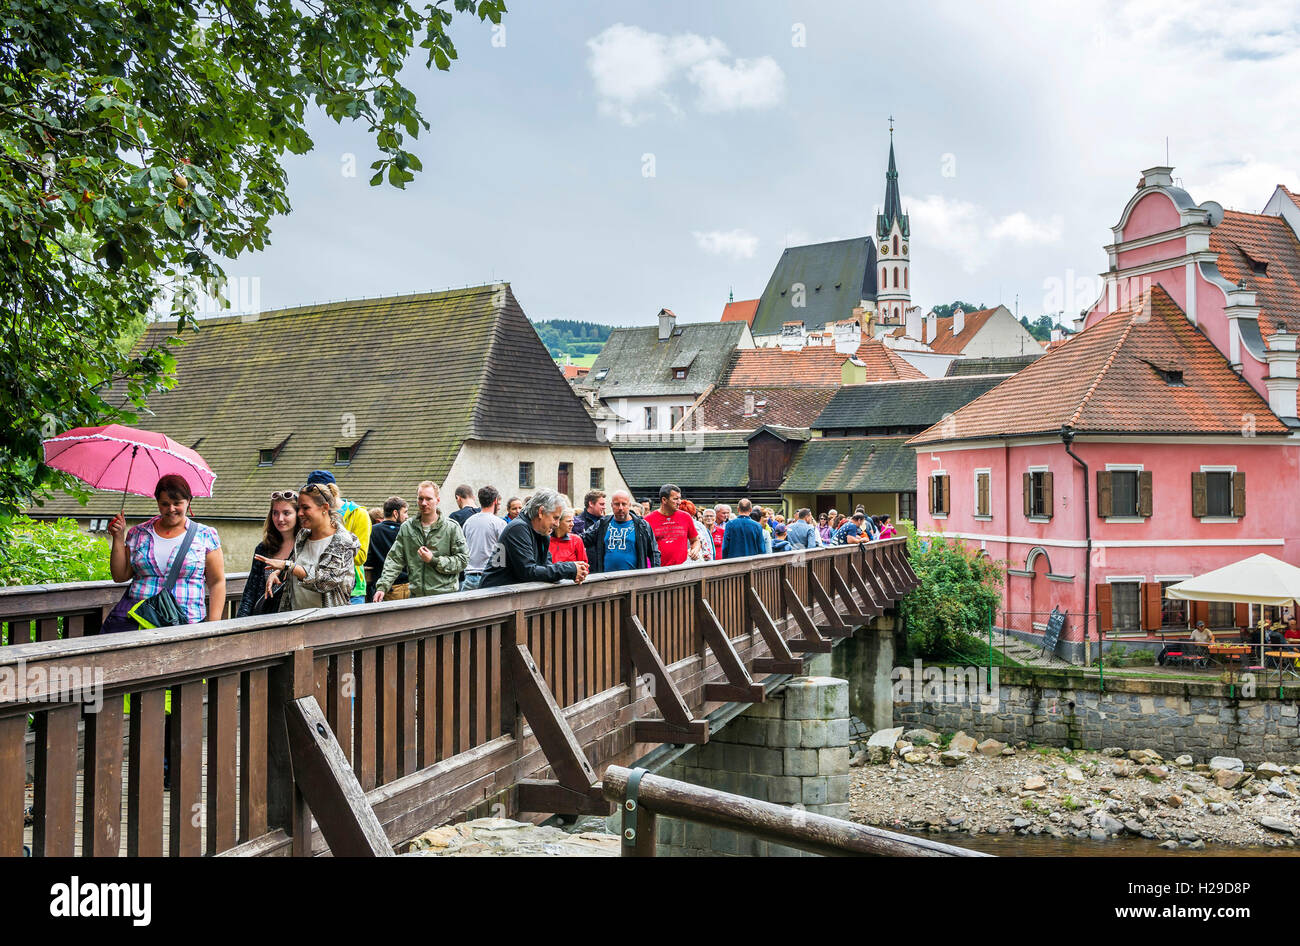 Cesky Krumlov, erstaunlich, einzigartige mittelalterliche Stadt in Böhmen, Tschechien Masse der Touristen auf der Fußgängerbrücke. Stockfoto